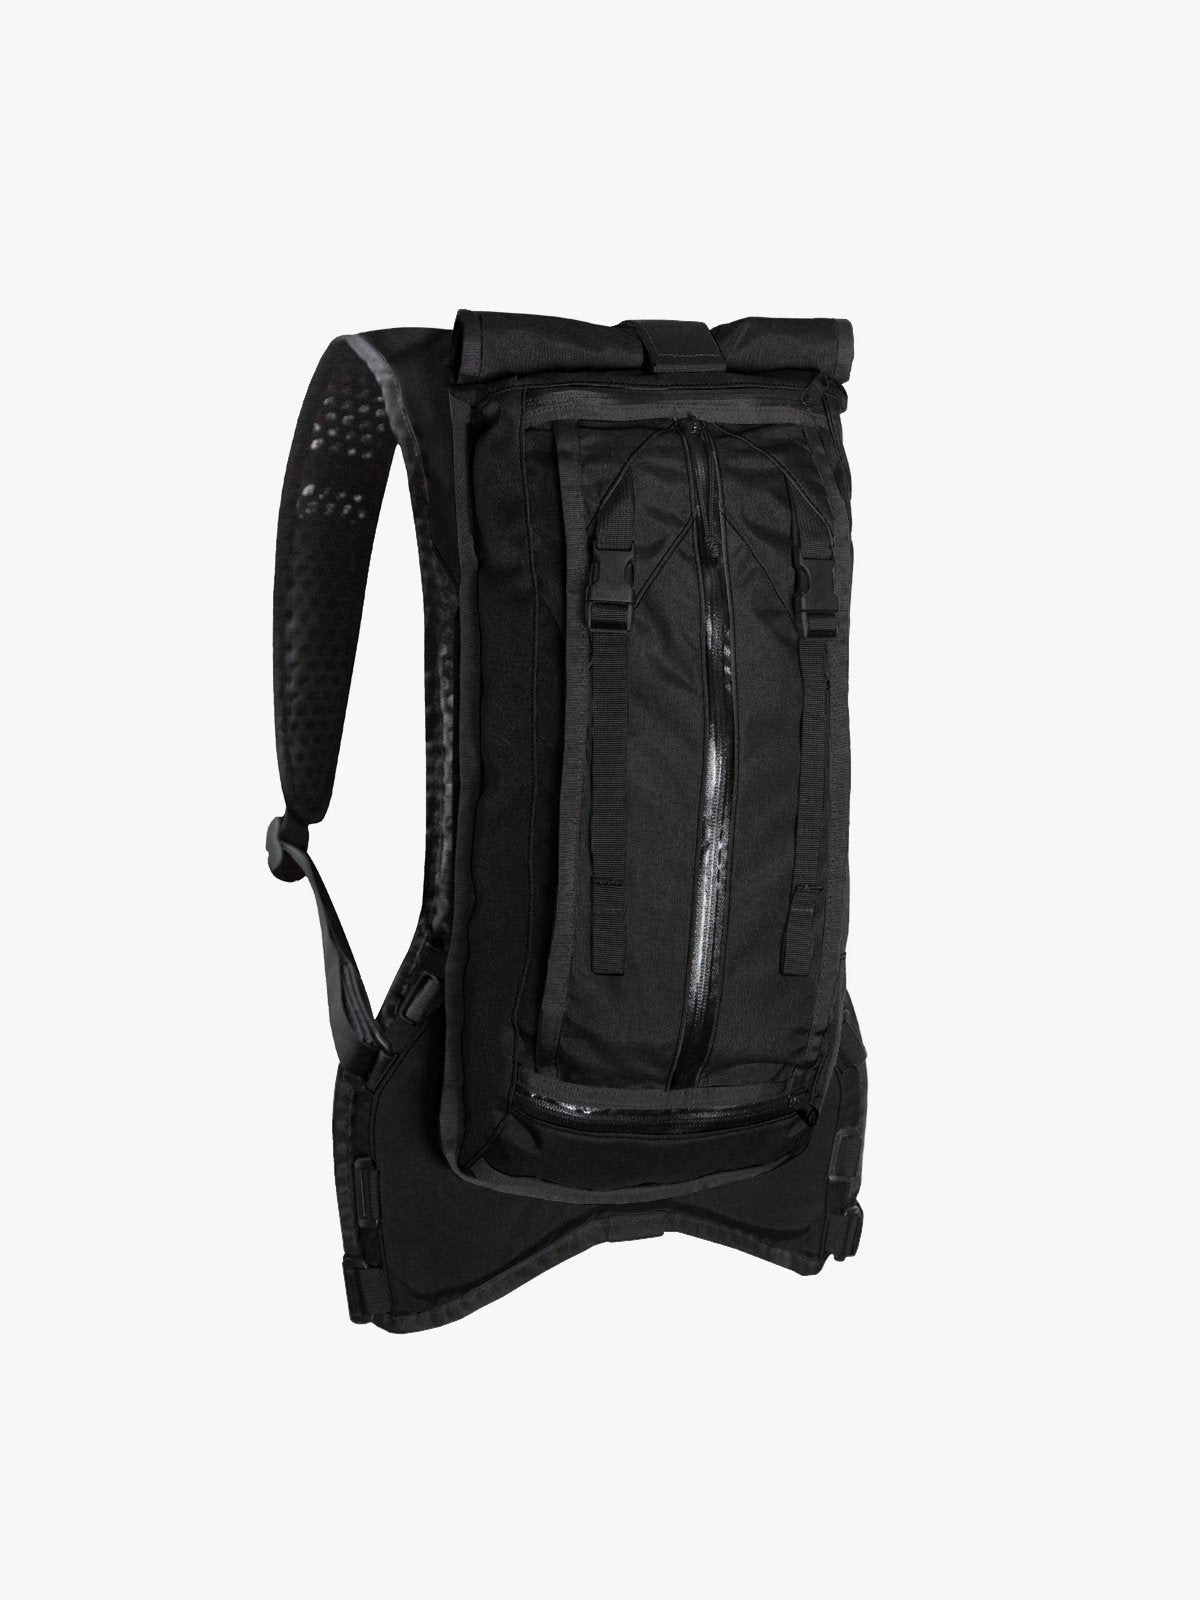 Hauser 10L by Mission Workshop - Weatherproof Bags & Technical Apparel - San Francisco & Los Angeles - Construit pour durer - Garanti pour toujours